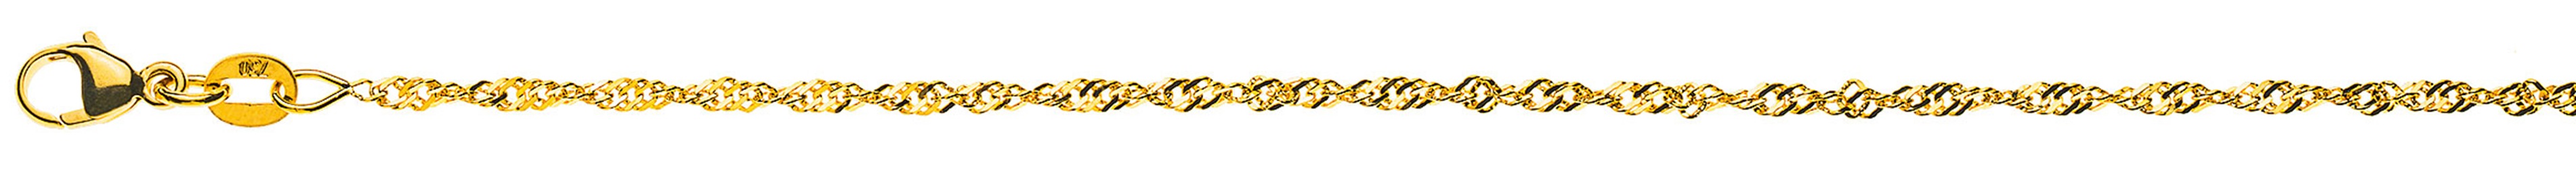 AURONOS Prestige Necklace Yellow Gold 18K Singapore Chain 45cm 1.9mm